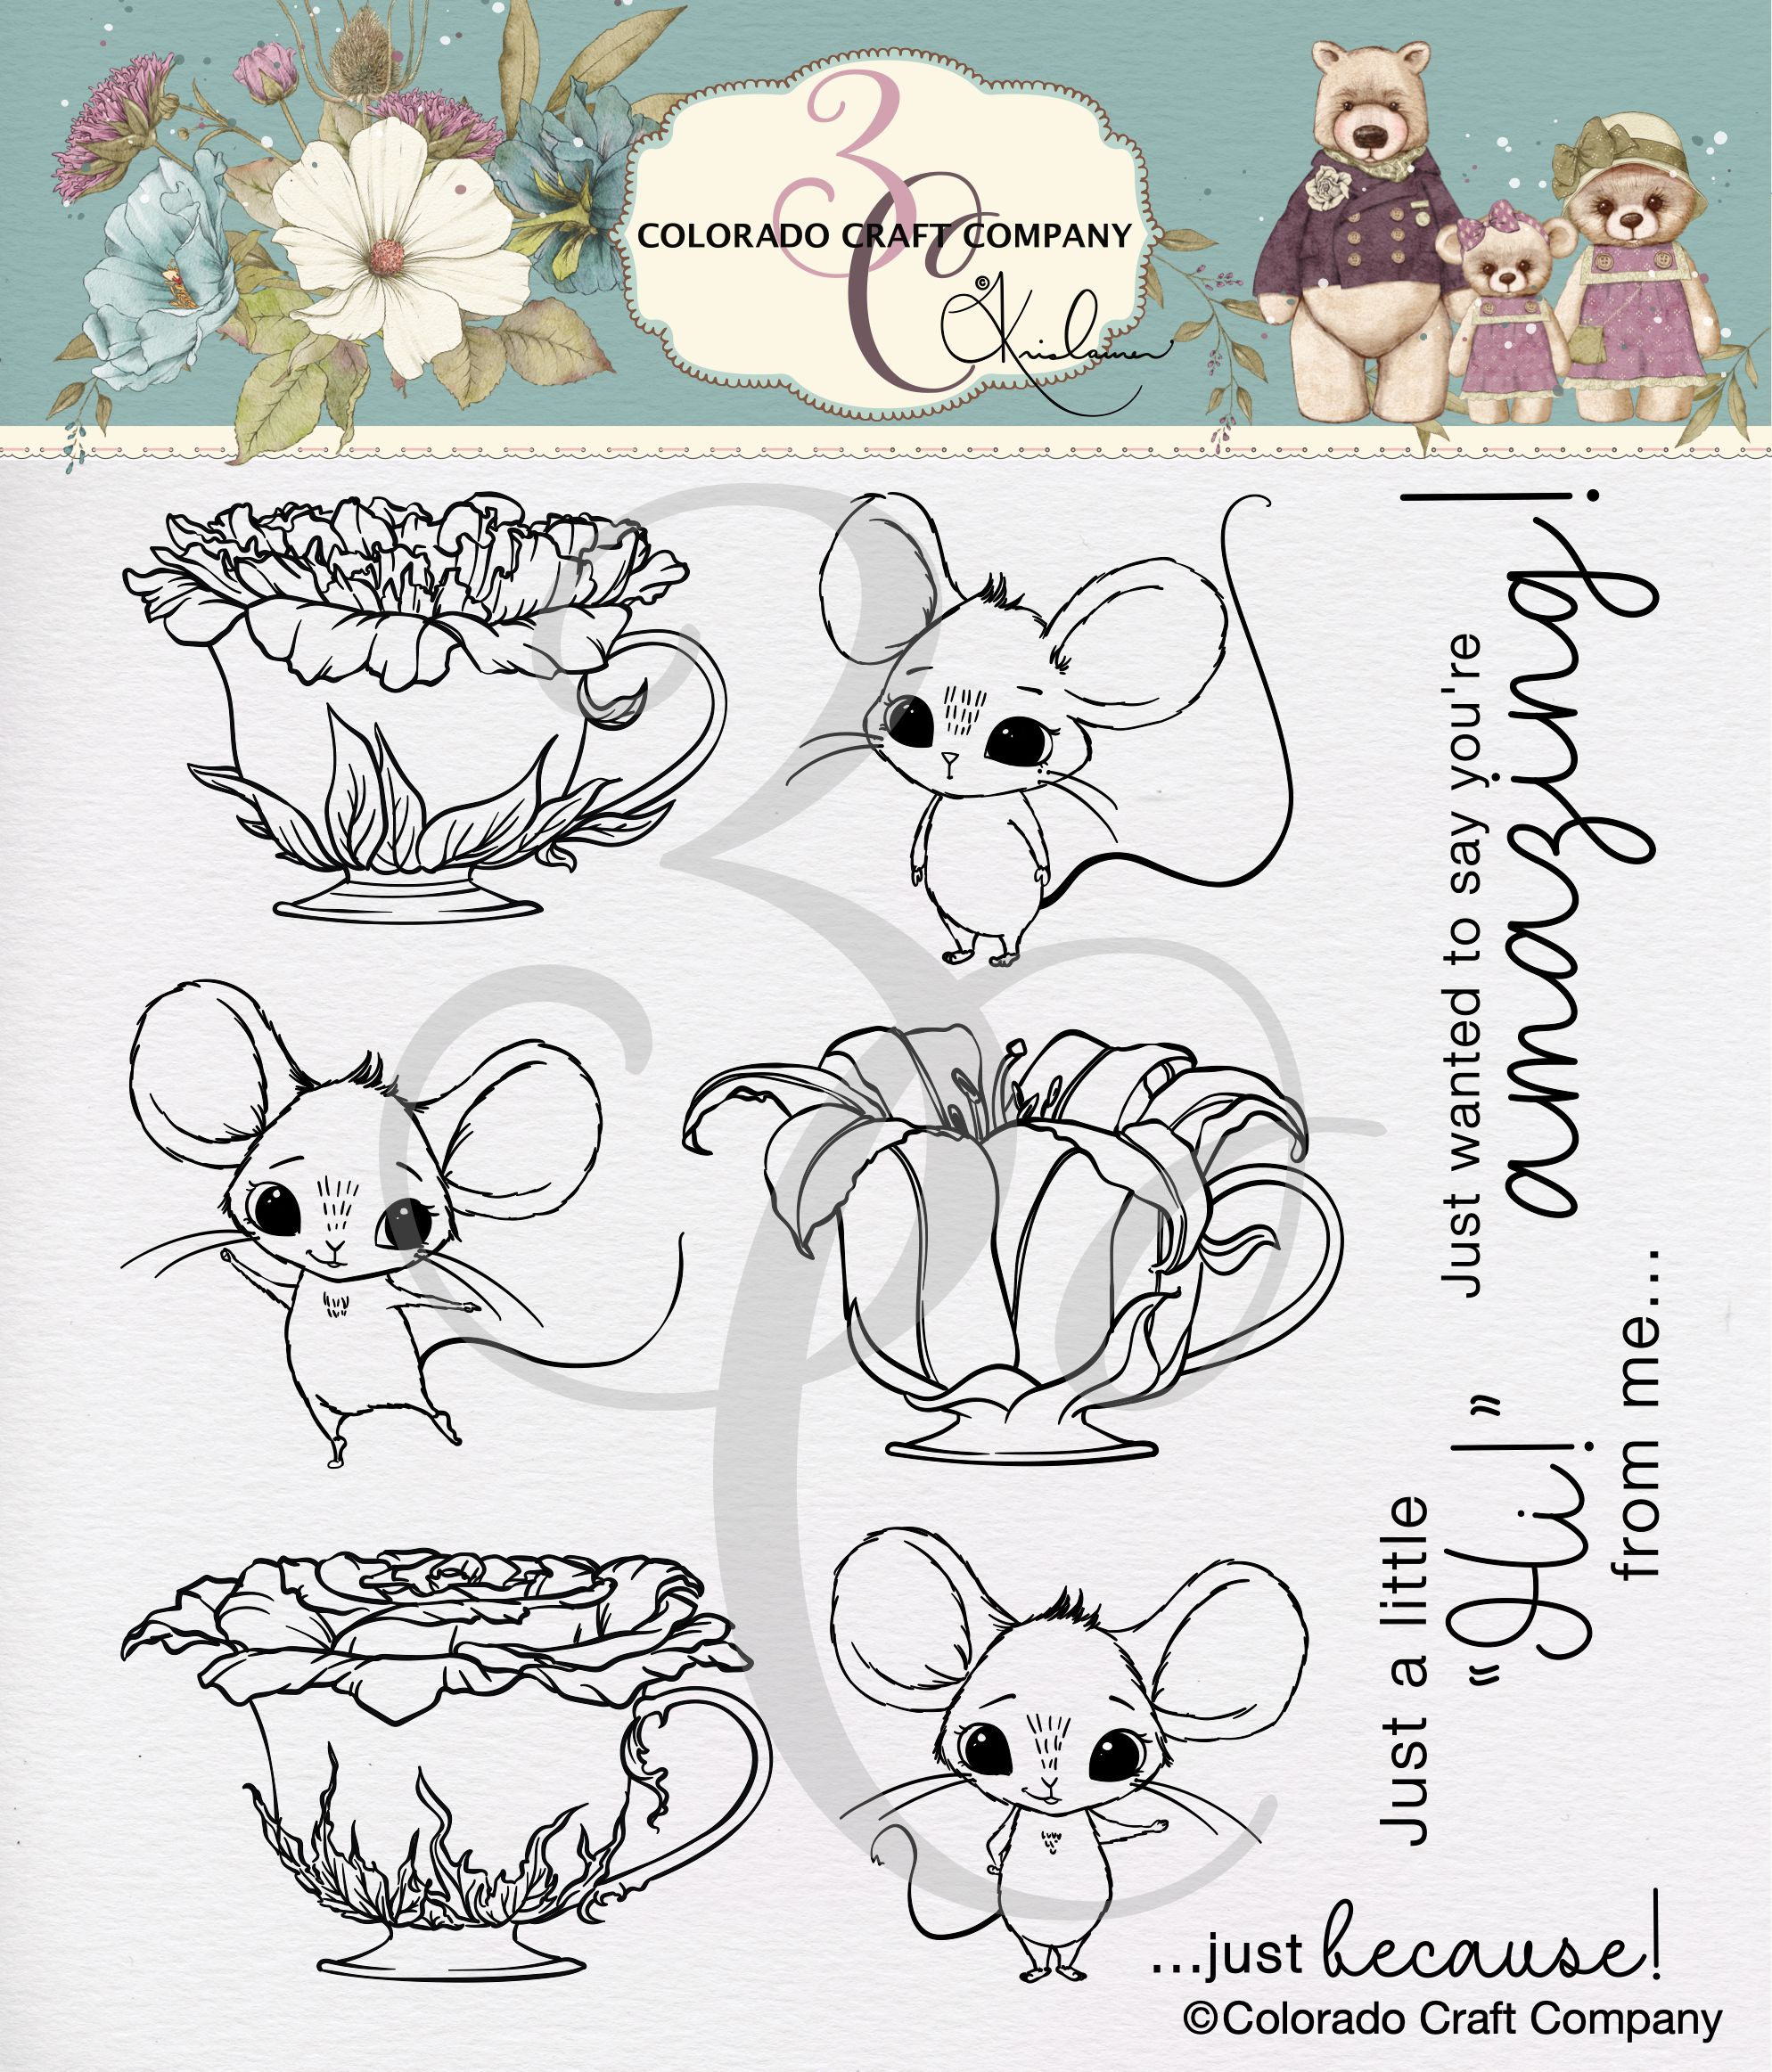 Colorado Craft Company/Kris Lauren, Teacups & Mice